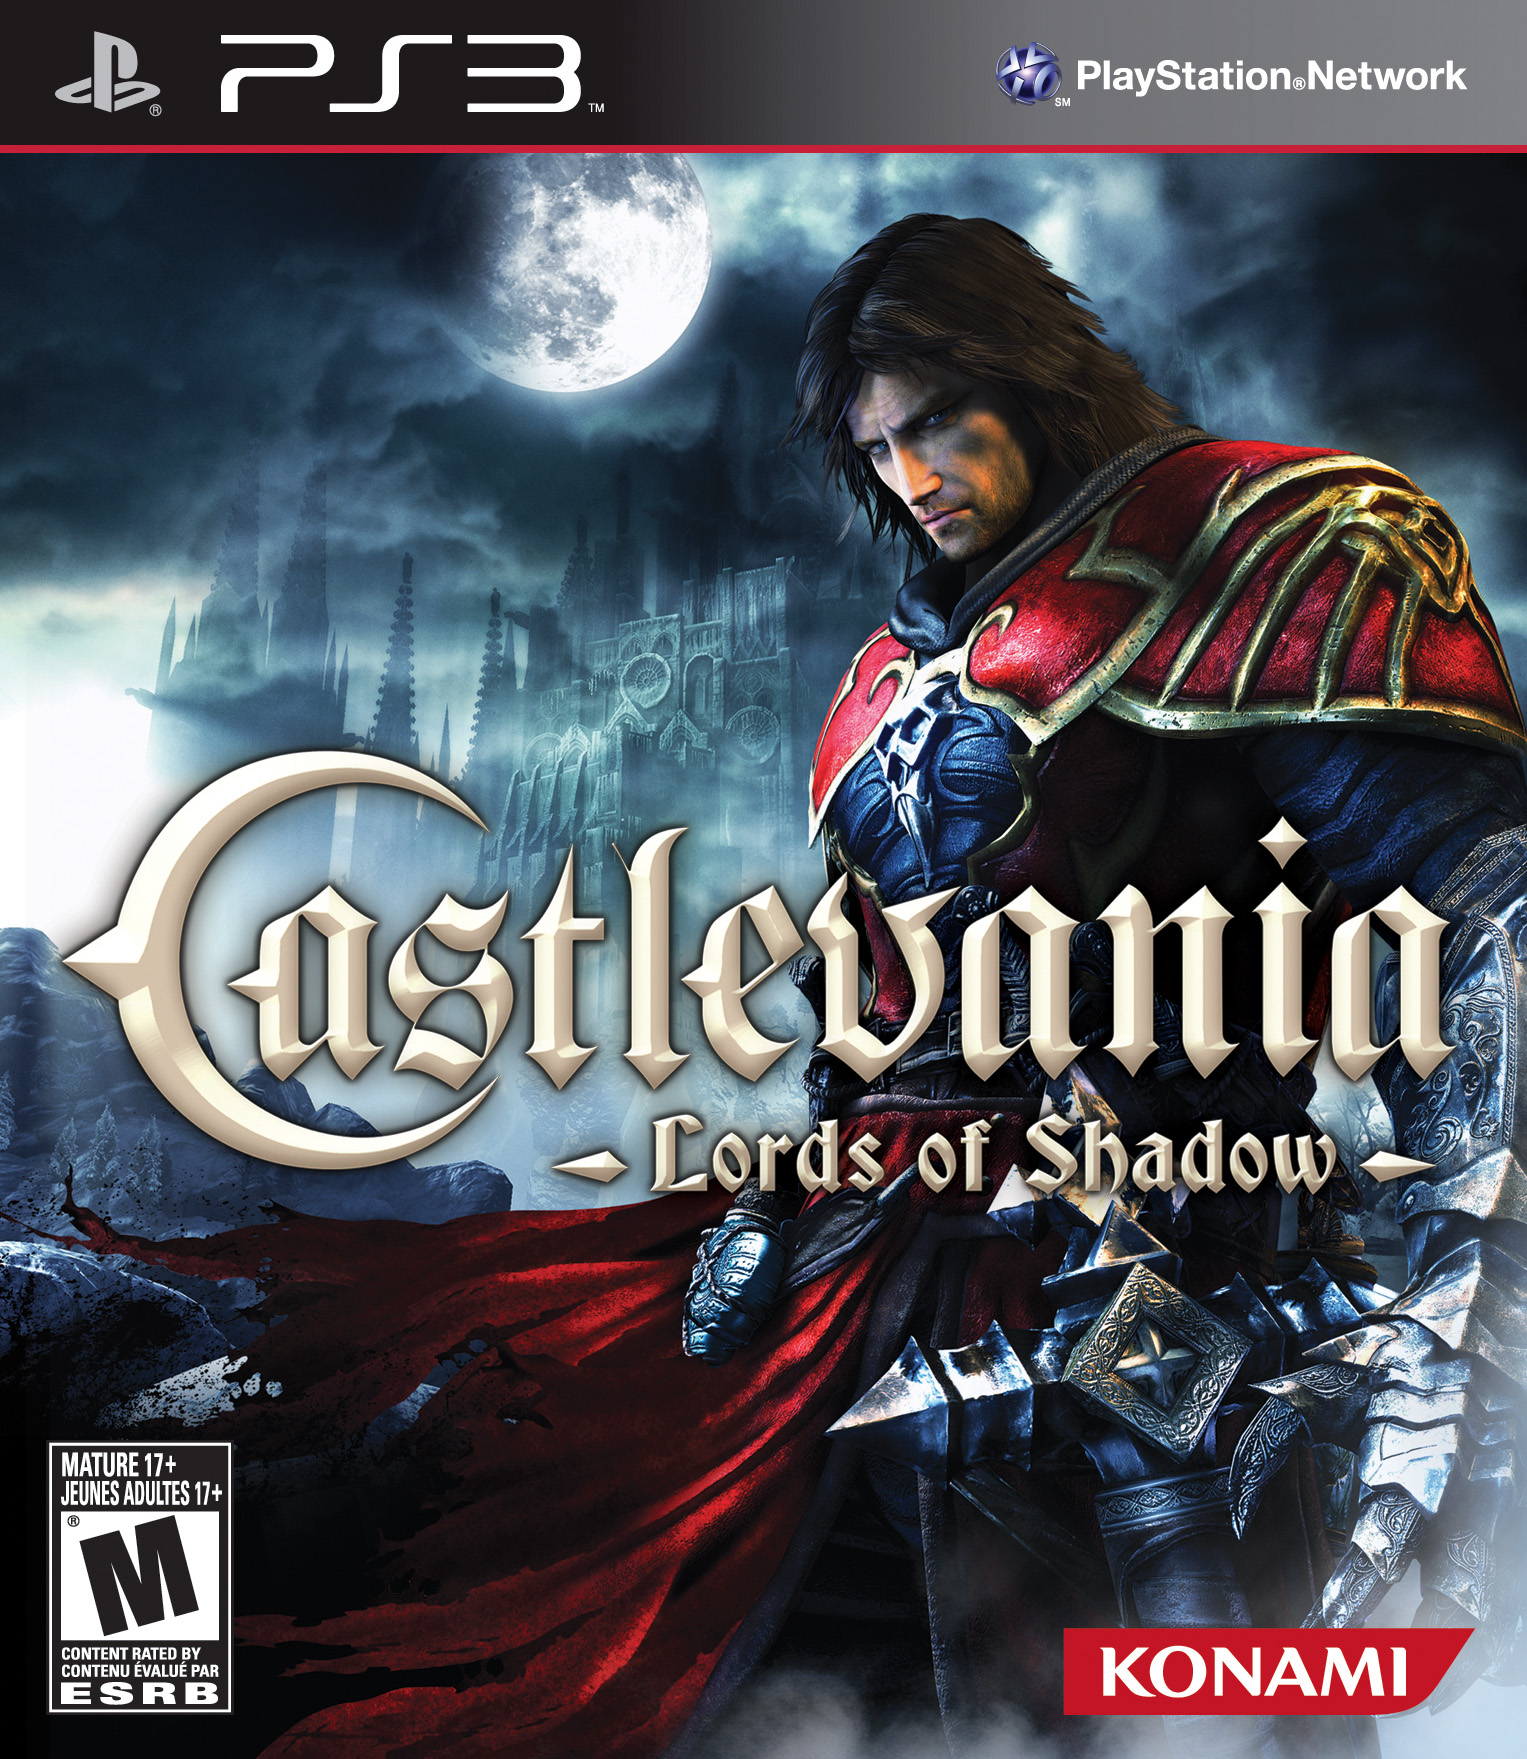 Castlevania: Lords of Shadow 2 confirmado para PC